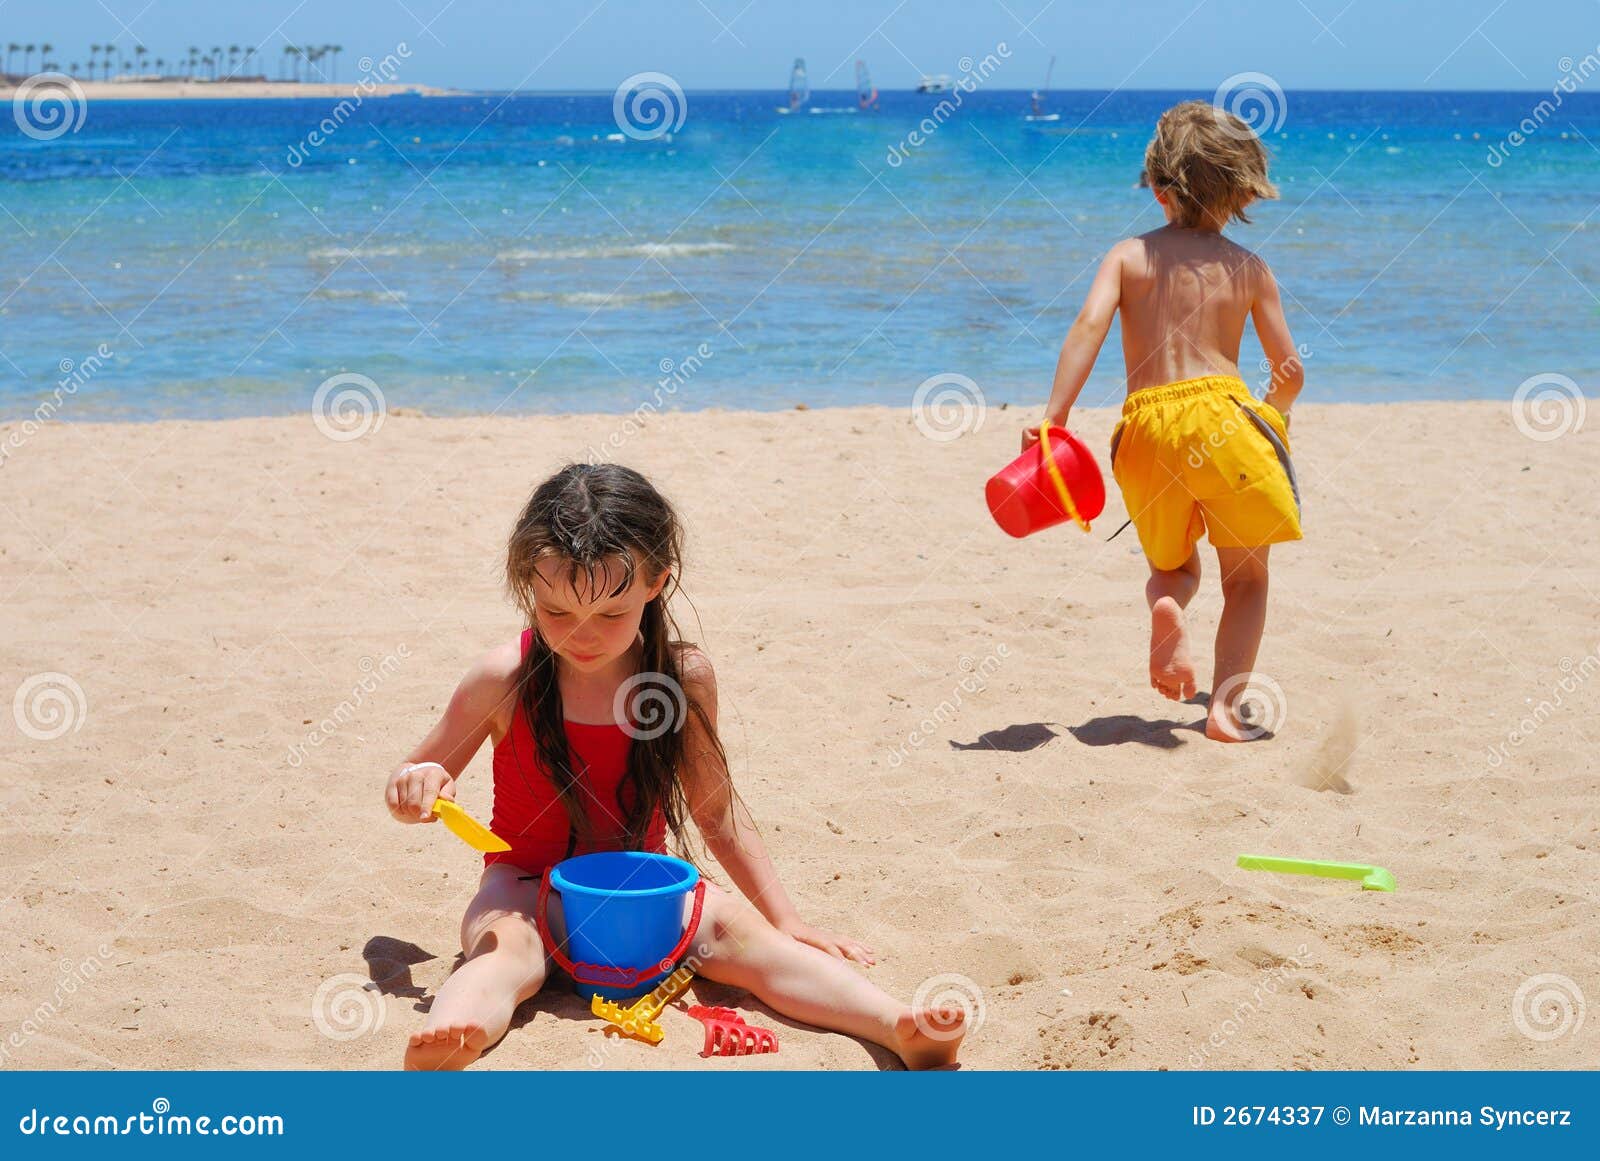 порно маленькие мальчики пляж фото 94